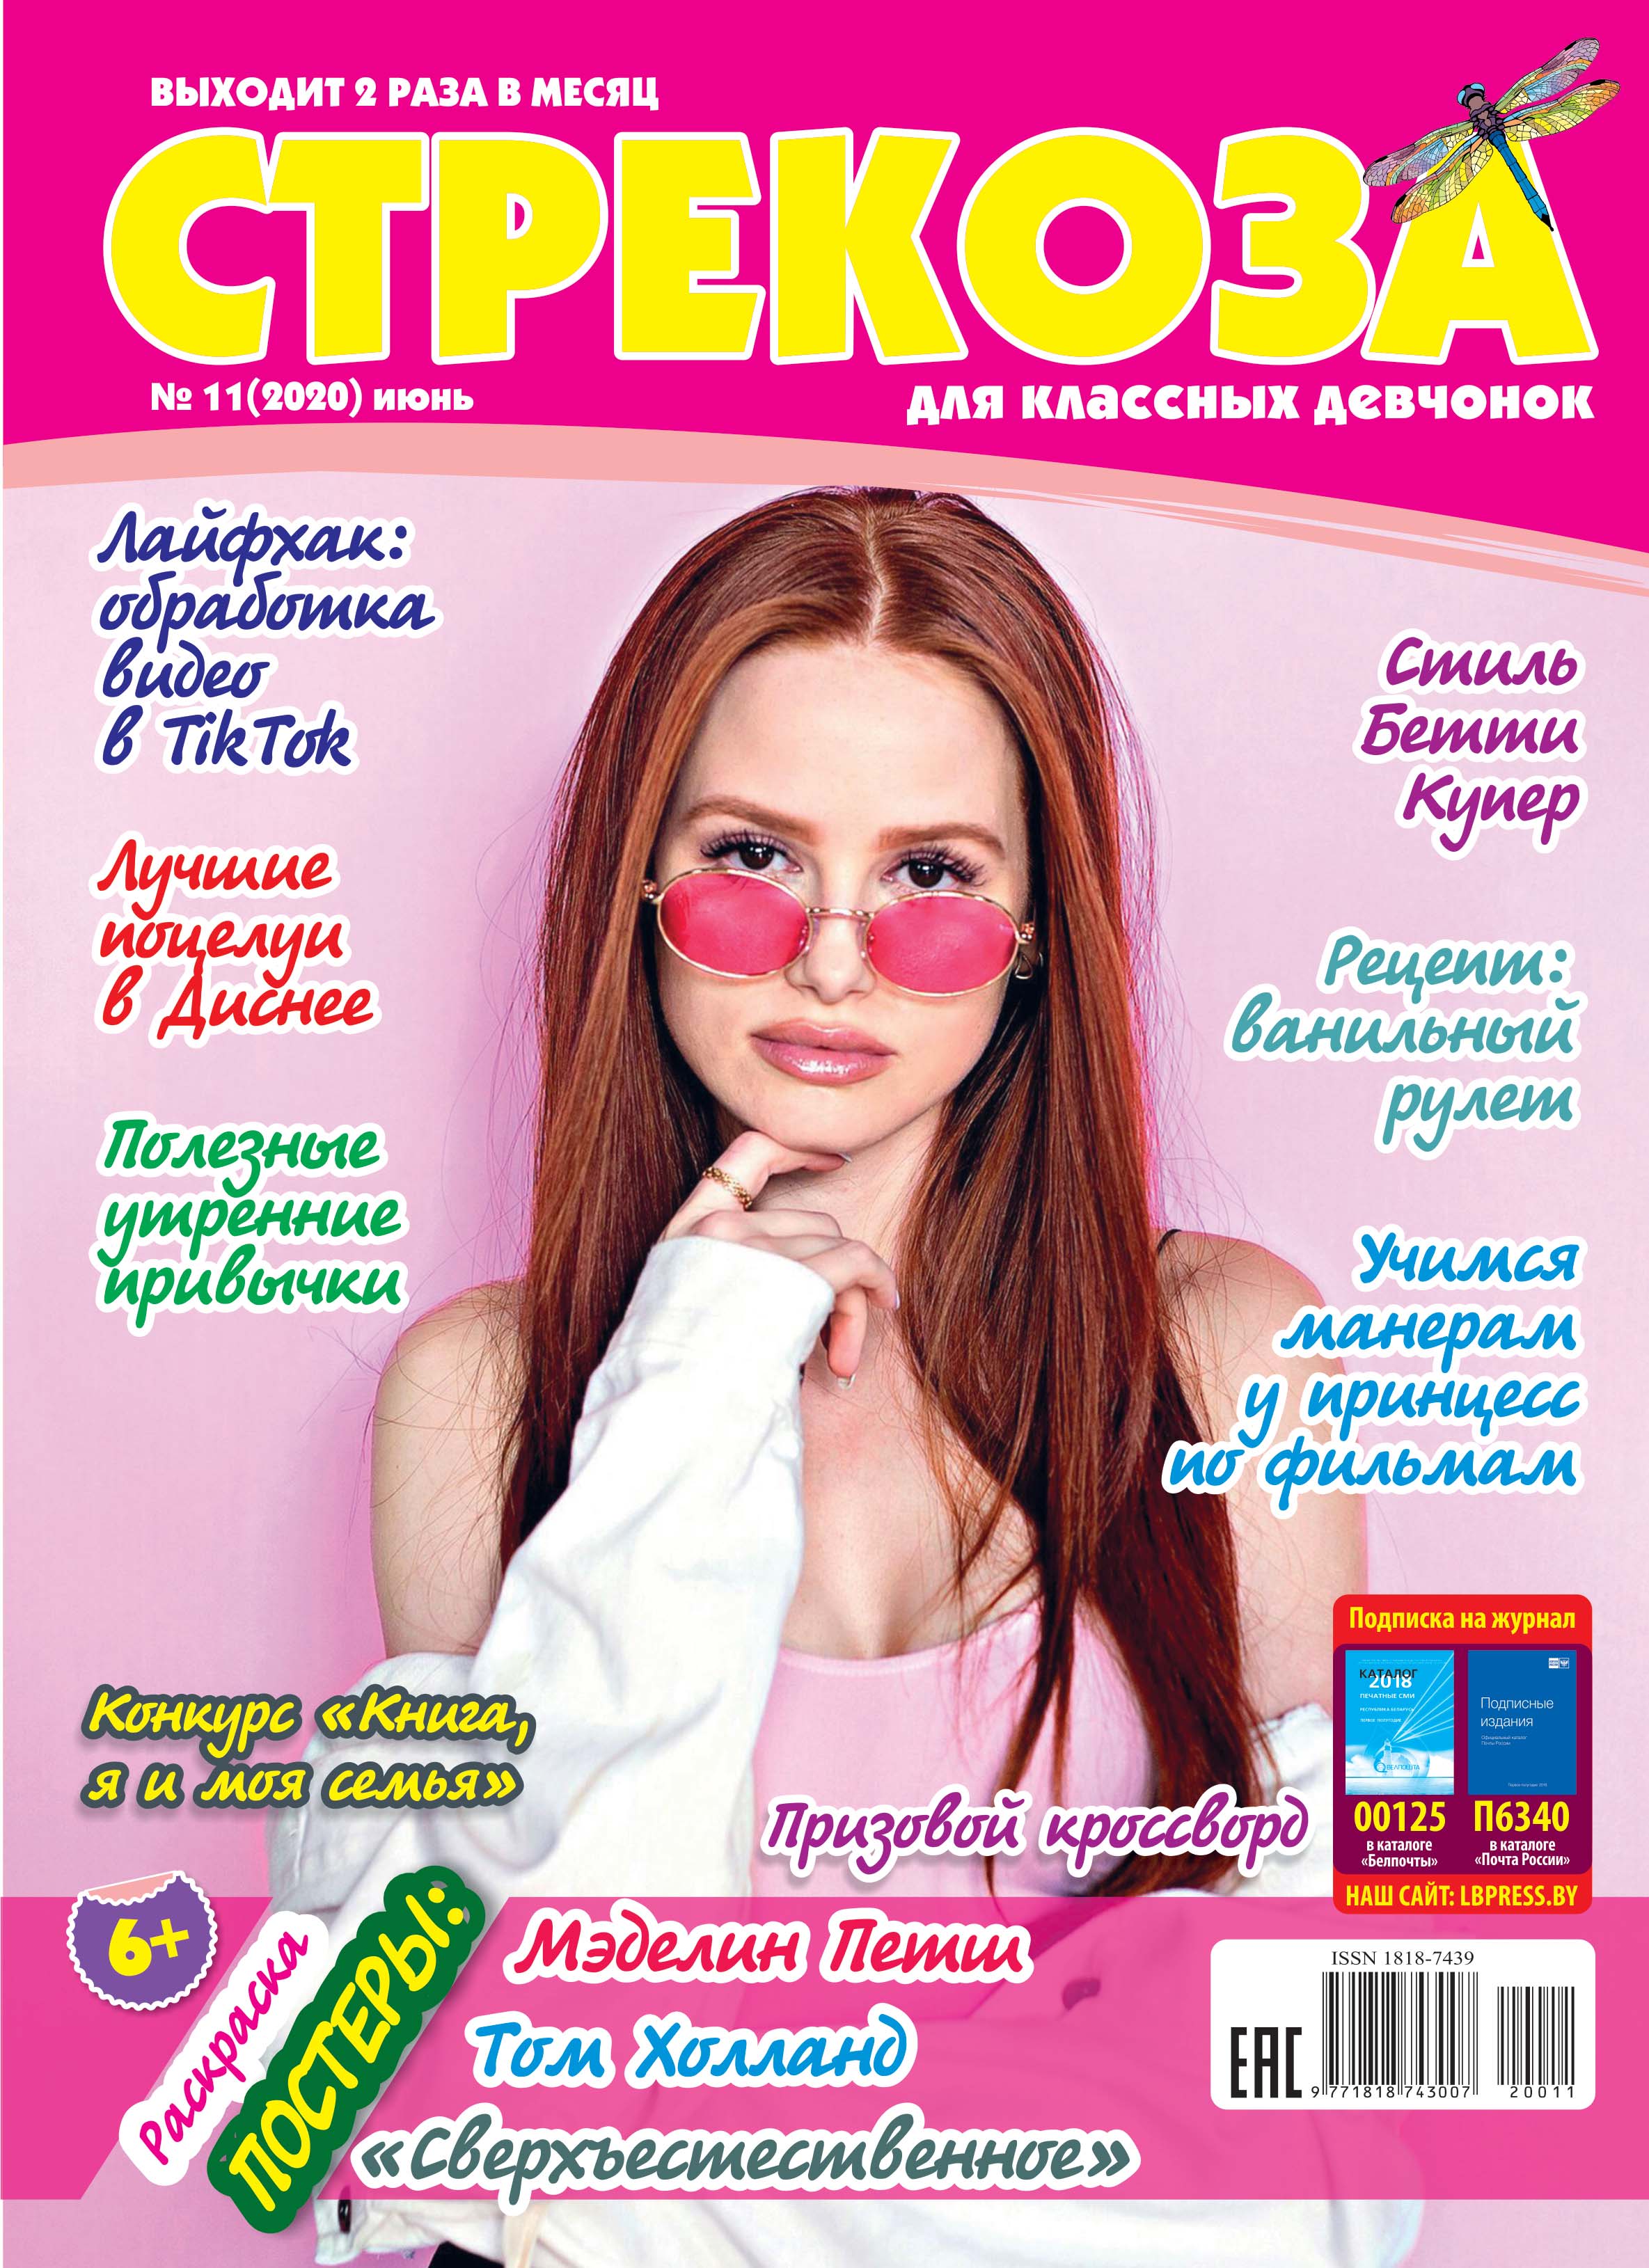 Какие журналы читают в вашей семье. Подростковые журналы для девочек. Журналы для девочек подростков. Обложки журналов для подростков. Стрекоза журнал для девочек.